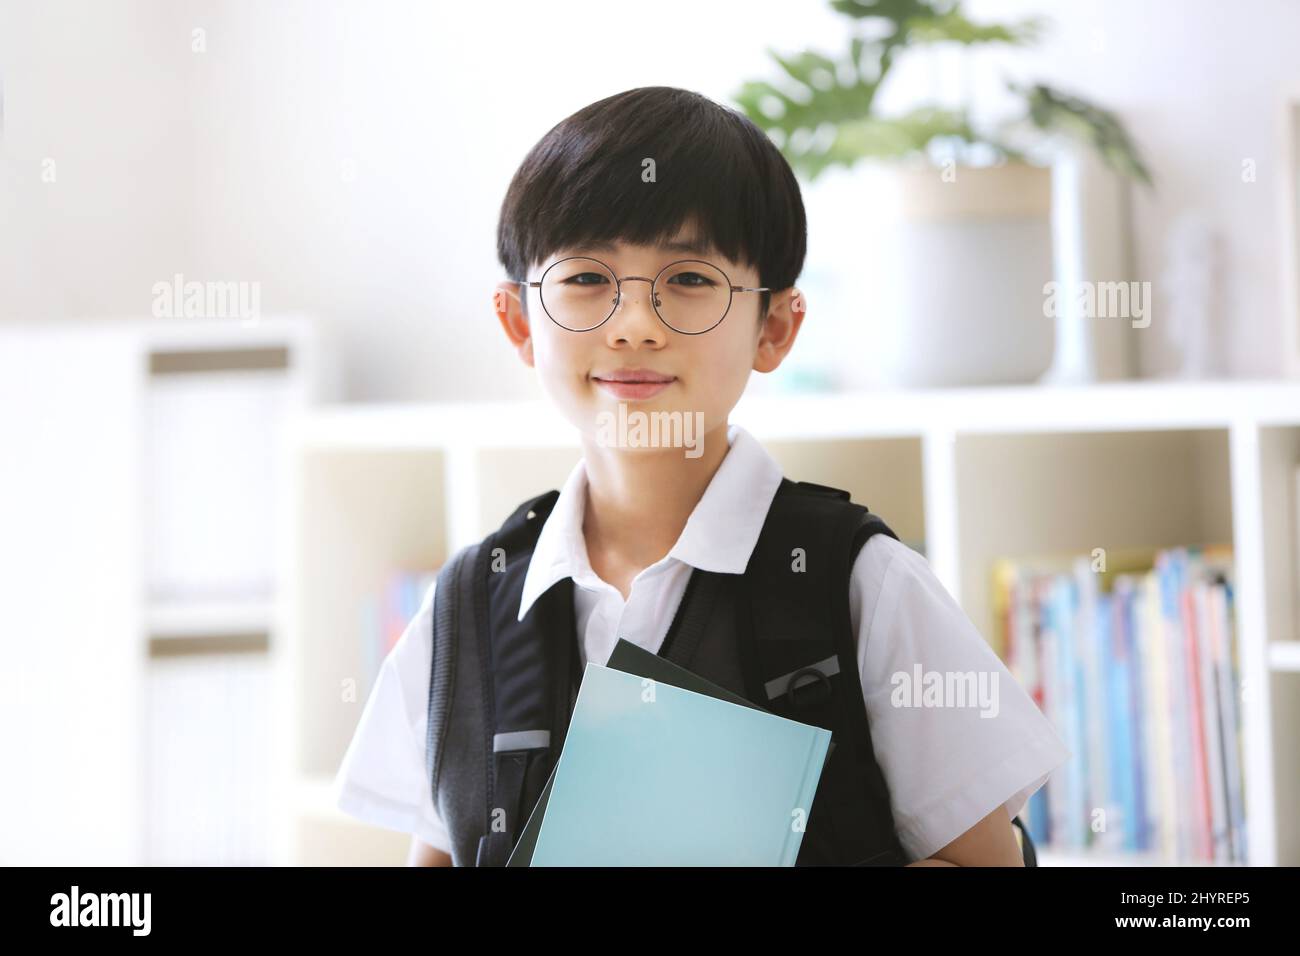 Abschluss, Zulassung und neues Semester Ein süßer und intelligenter Junge mit Rucksack und lächelndem Lächeln geht mit einem Buch zur Schule. Stockfoto